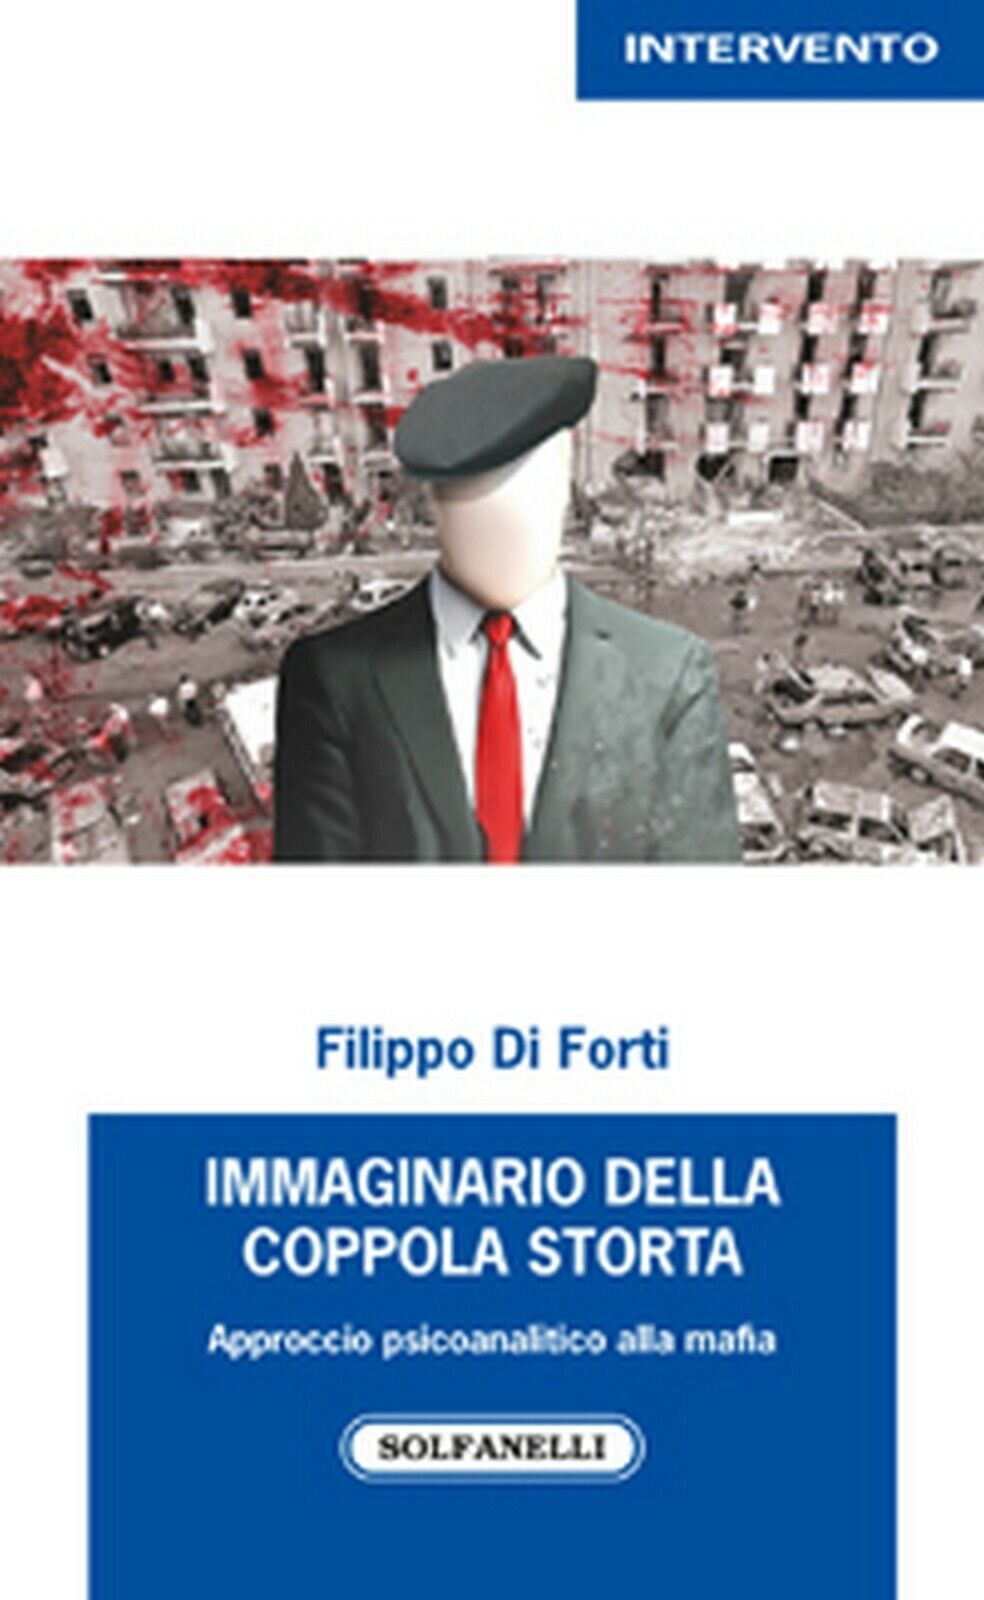 IMMAGINARIO DELLA COPPOLA STORTA  di Filippo Di Forti,  Solfanelli Edizioni